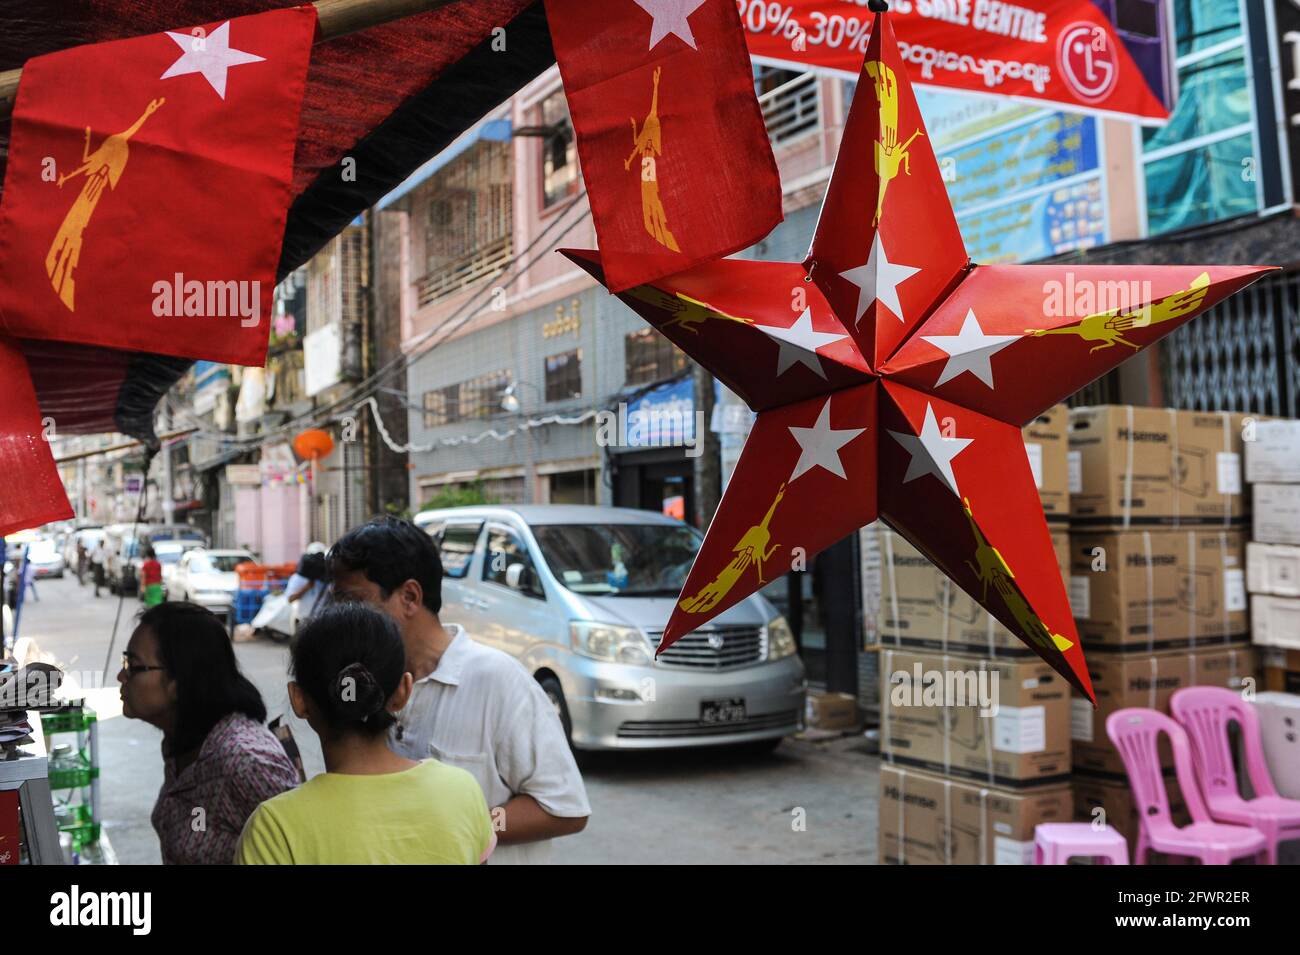 31.10.2015, Yangon, Myanmar, Asien - in einem Geschäft hängt ein roter Stern aus Pappe mit dem Logo der NLD-Partei (National League for Democracy). Stockfoto